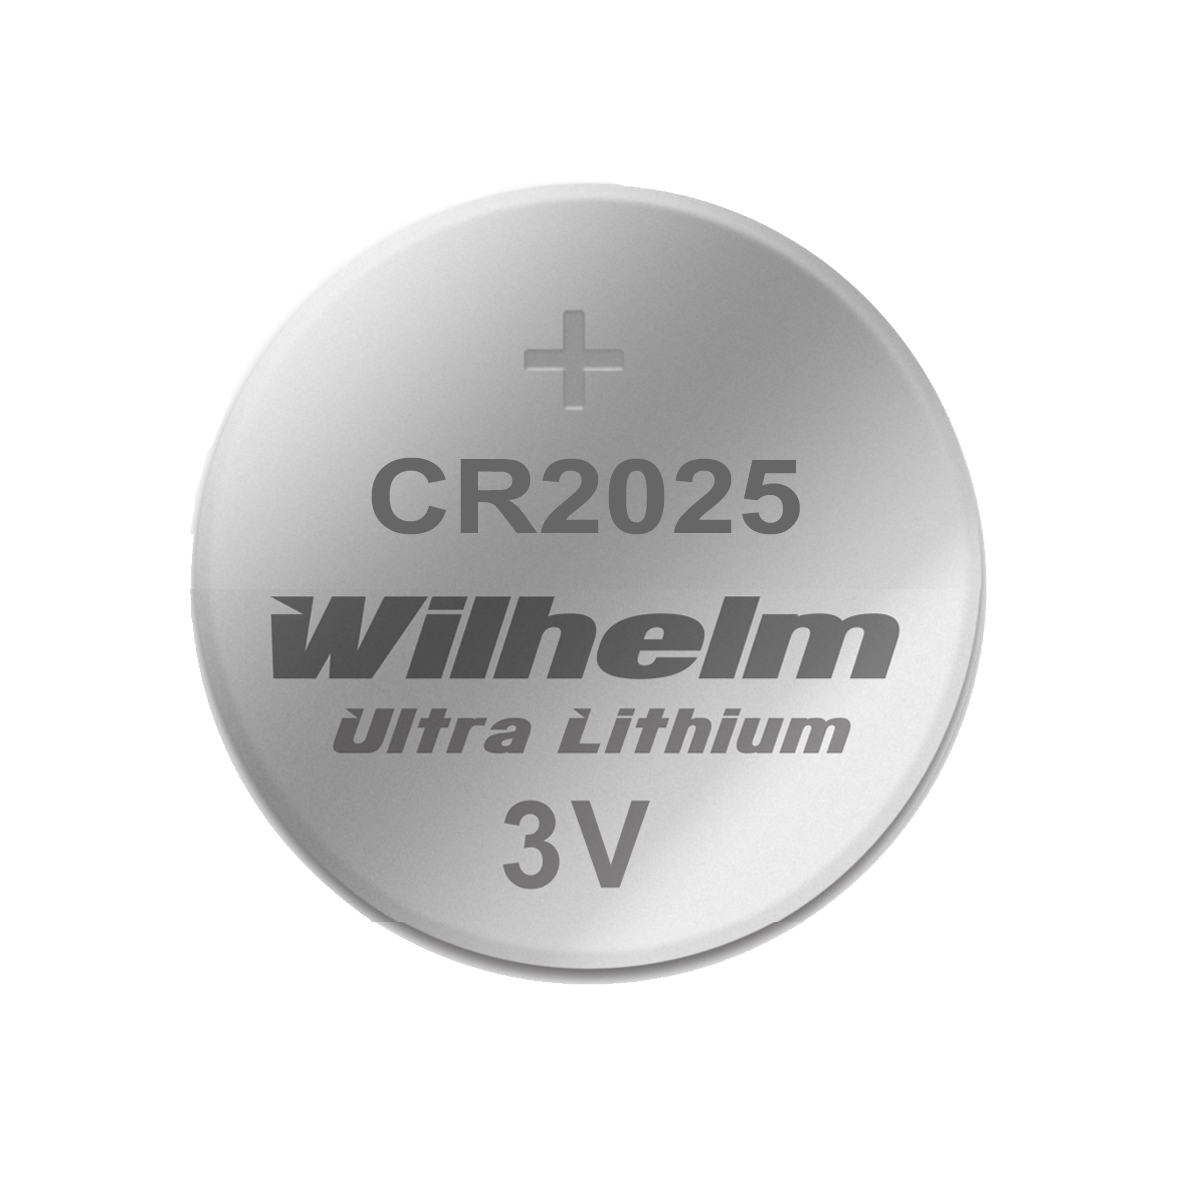 CR2025 Lithium